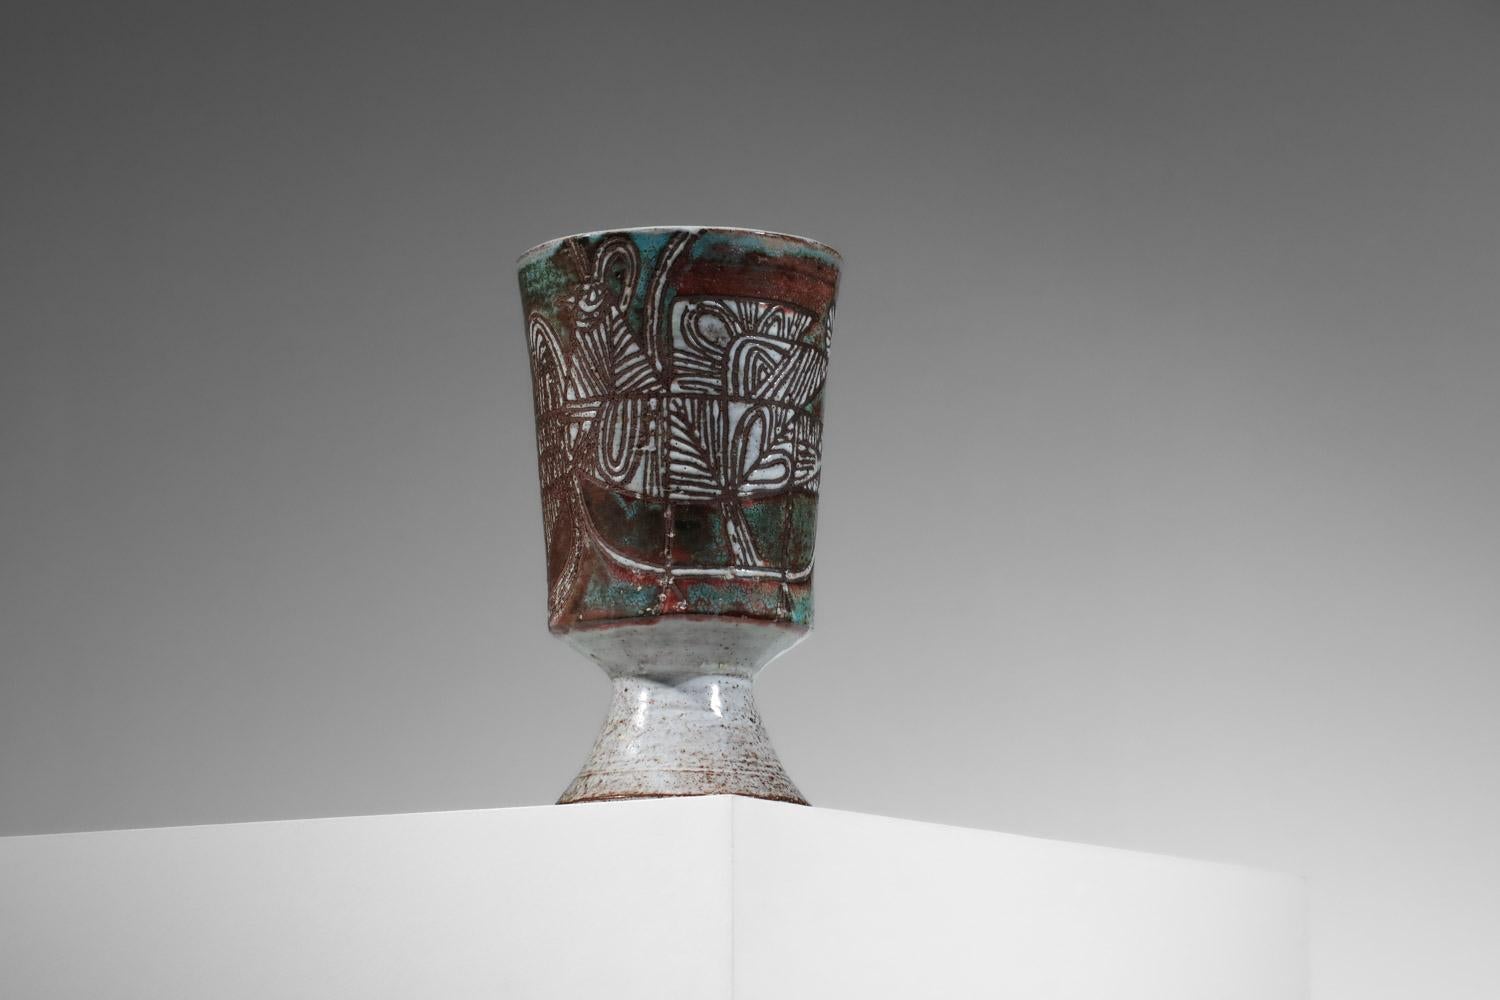 Grand vase des années 50 de l'artiste français Jean Derval. Céramique émaillée dans des teintes rouges, blanches et vertes avec sur l'ensemble un décor géométrique représentant une poule typique du style de l'artiste. Très bel état vintage,